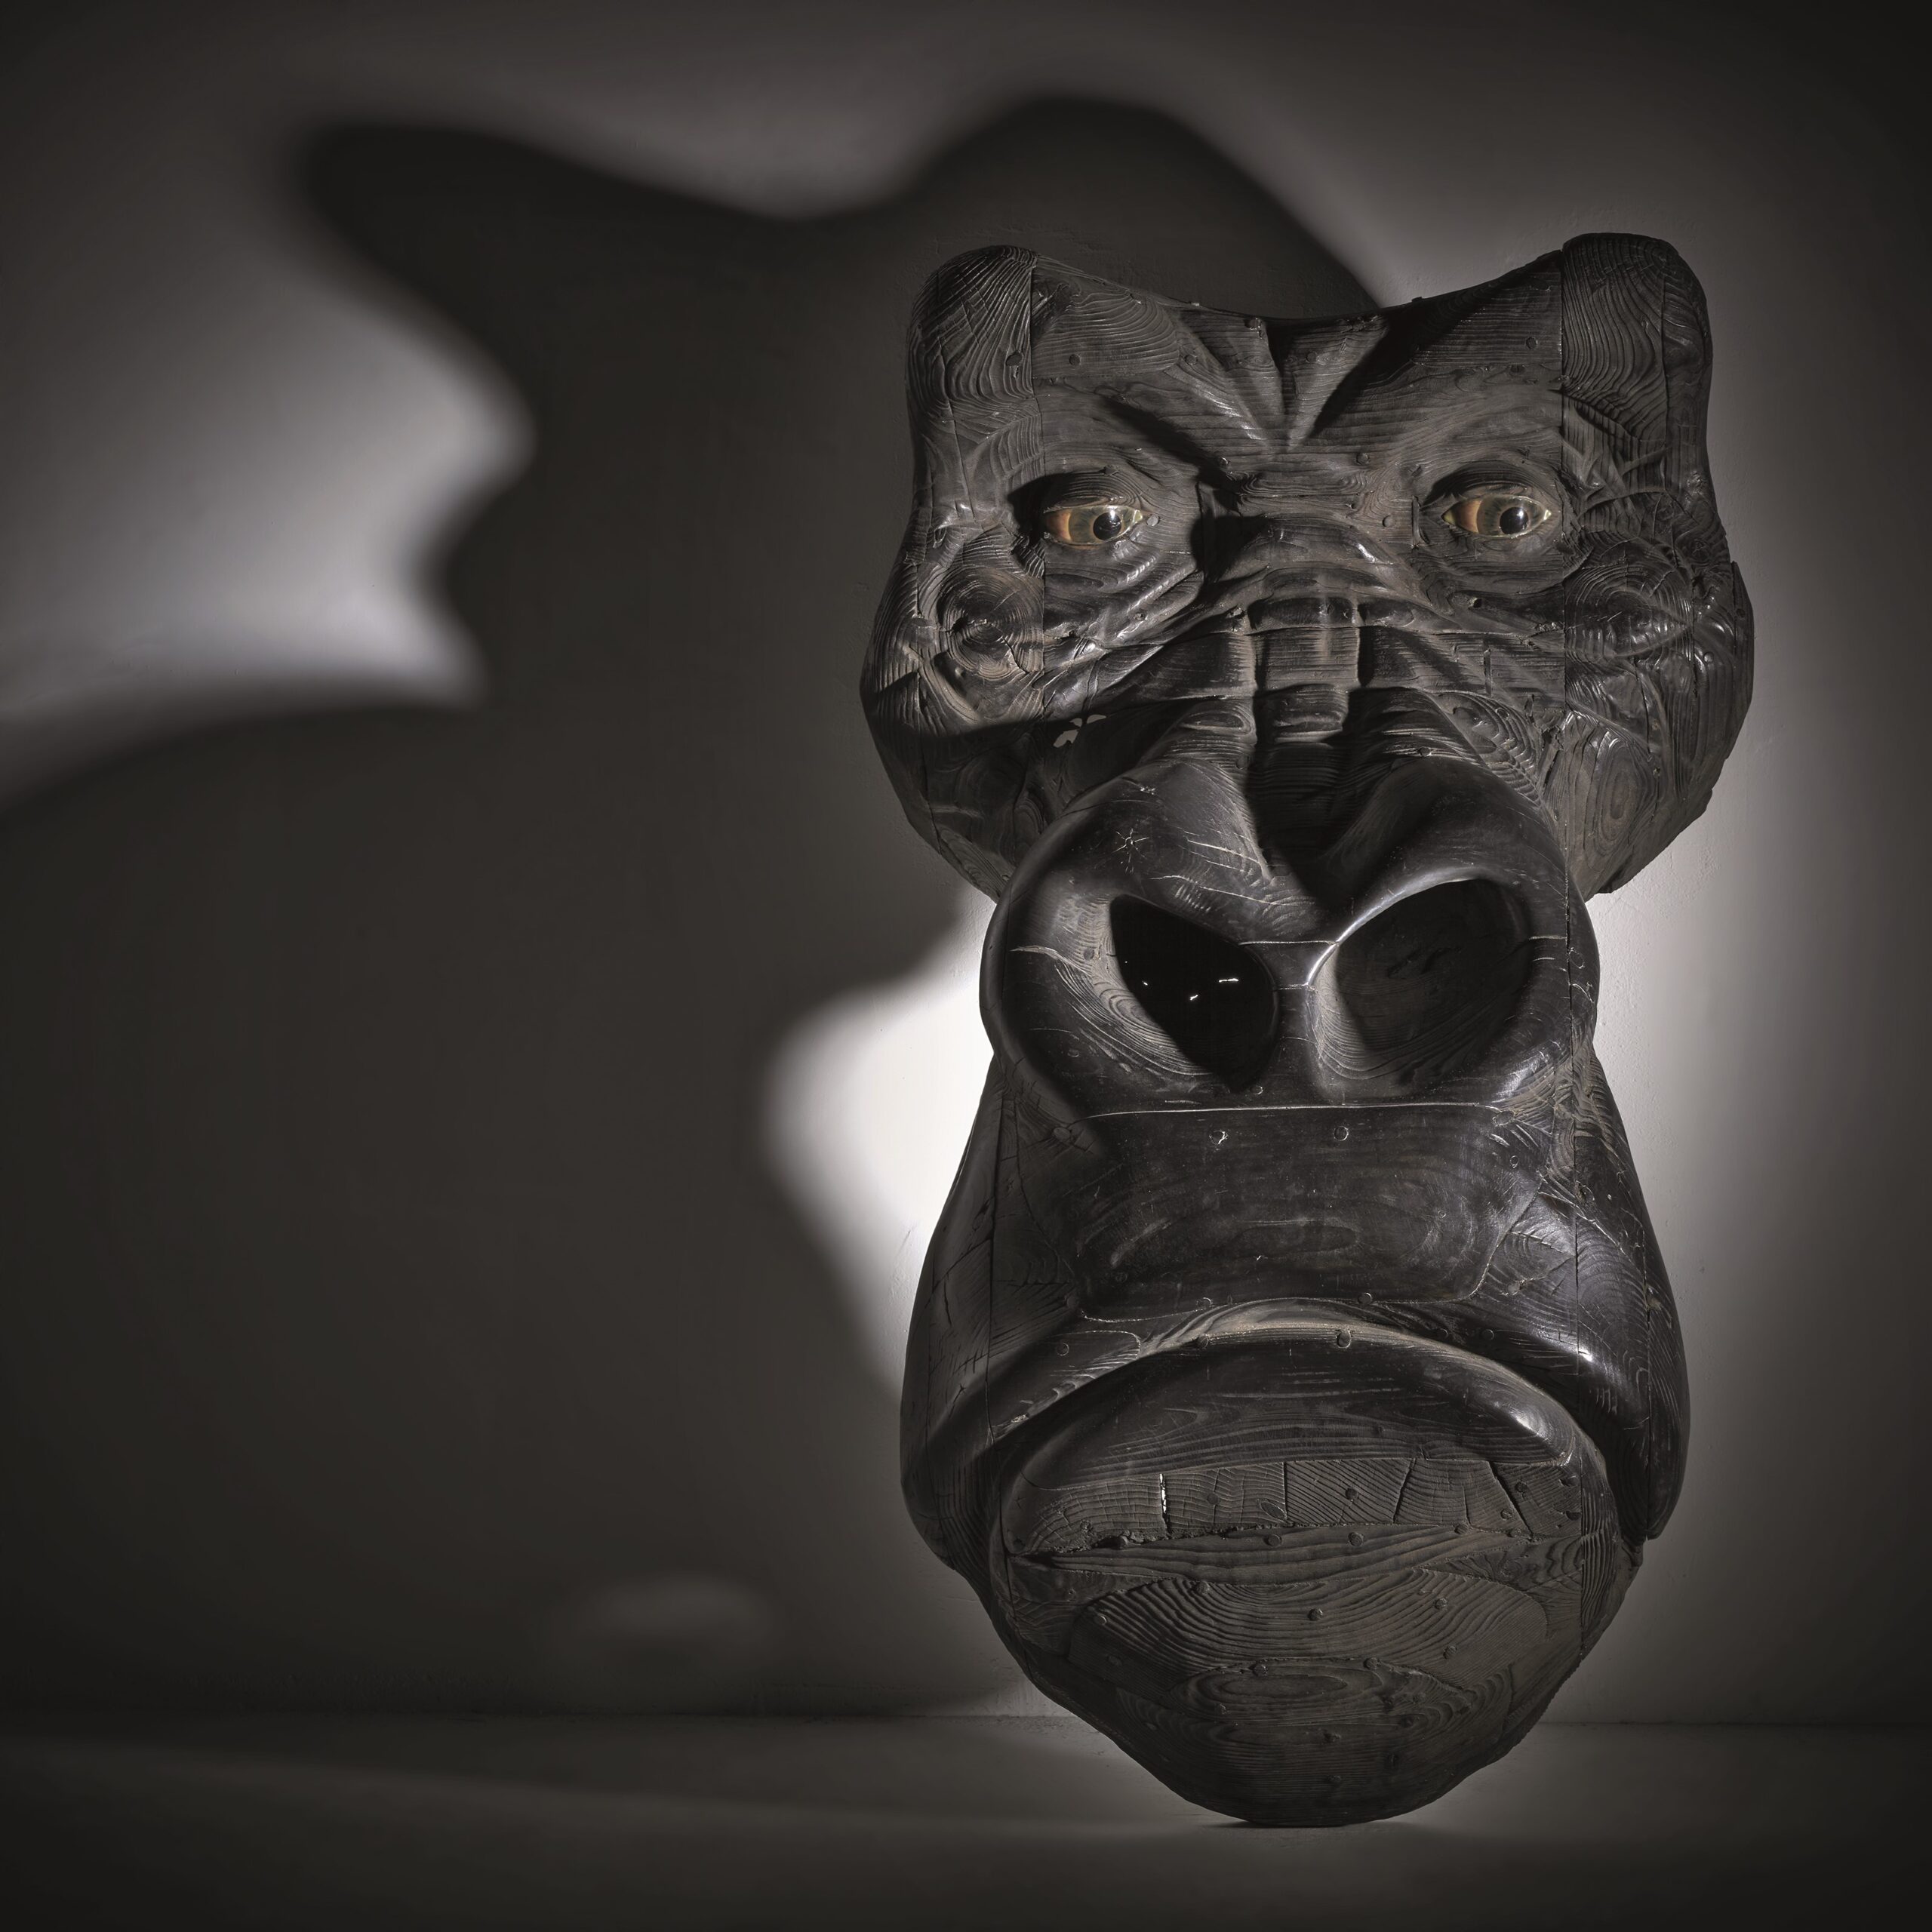 Quentin Garel (né en 1975), Masque de gorille, 2011. Bois patiné noir, 160 x 67 x 103 cm. Paris, galerie Jacques De Vos. © Christian Baraja 